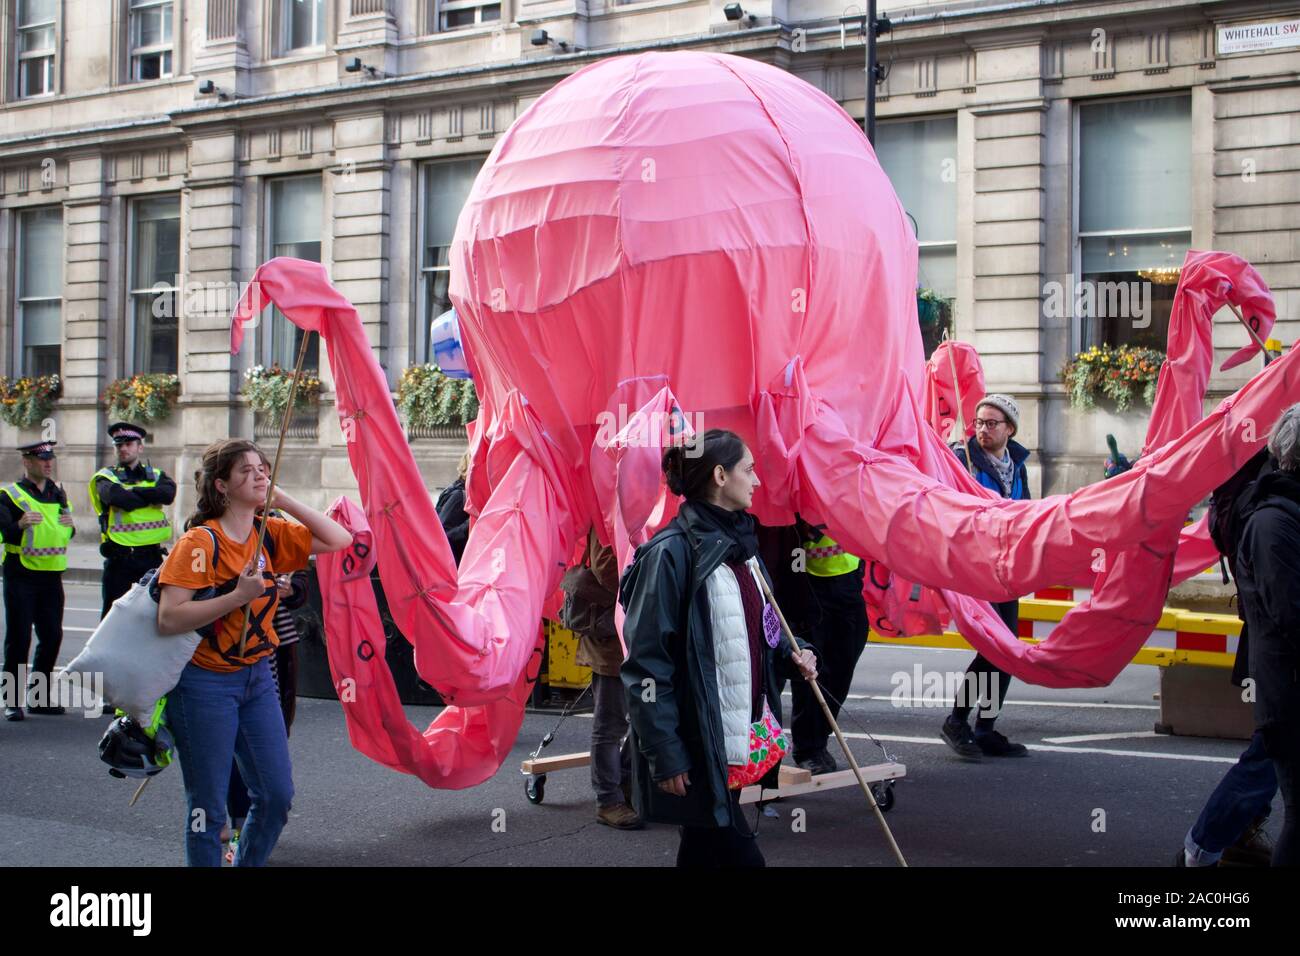 9 octobre 2019 - Whitehall, Londres, UK : Extinction manifestants rébellion octopus Banque D'Images